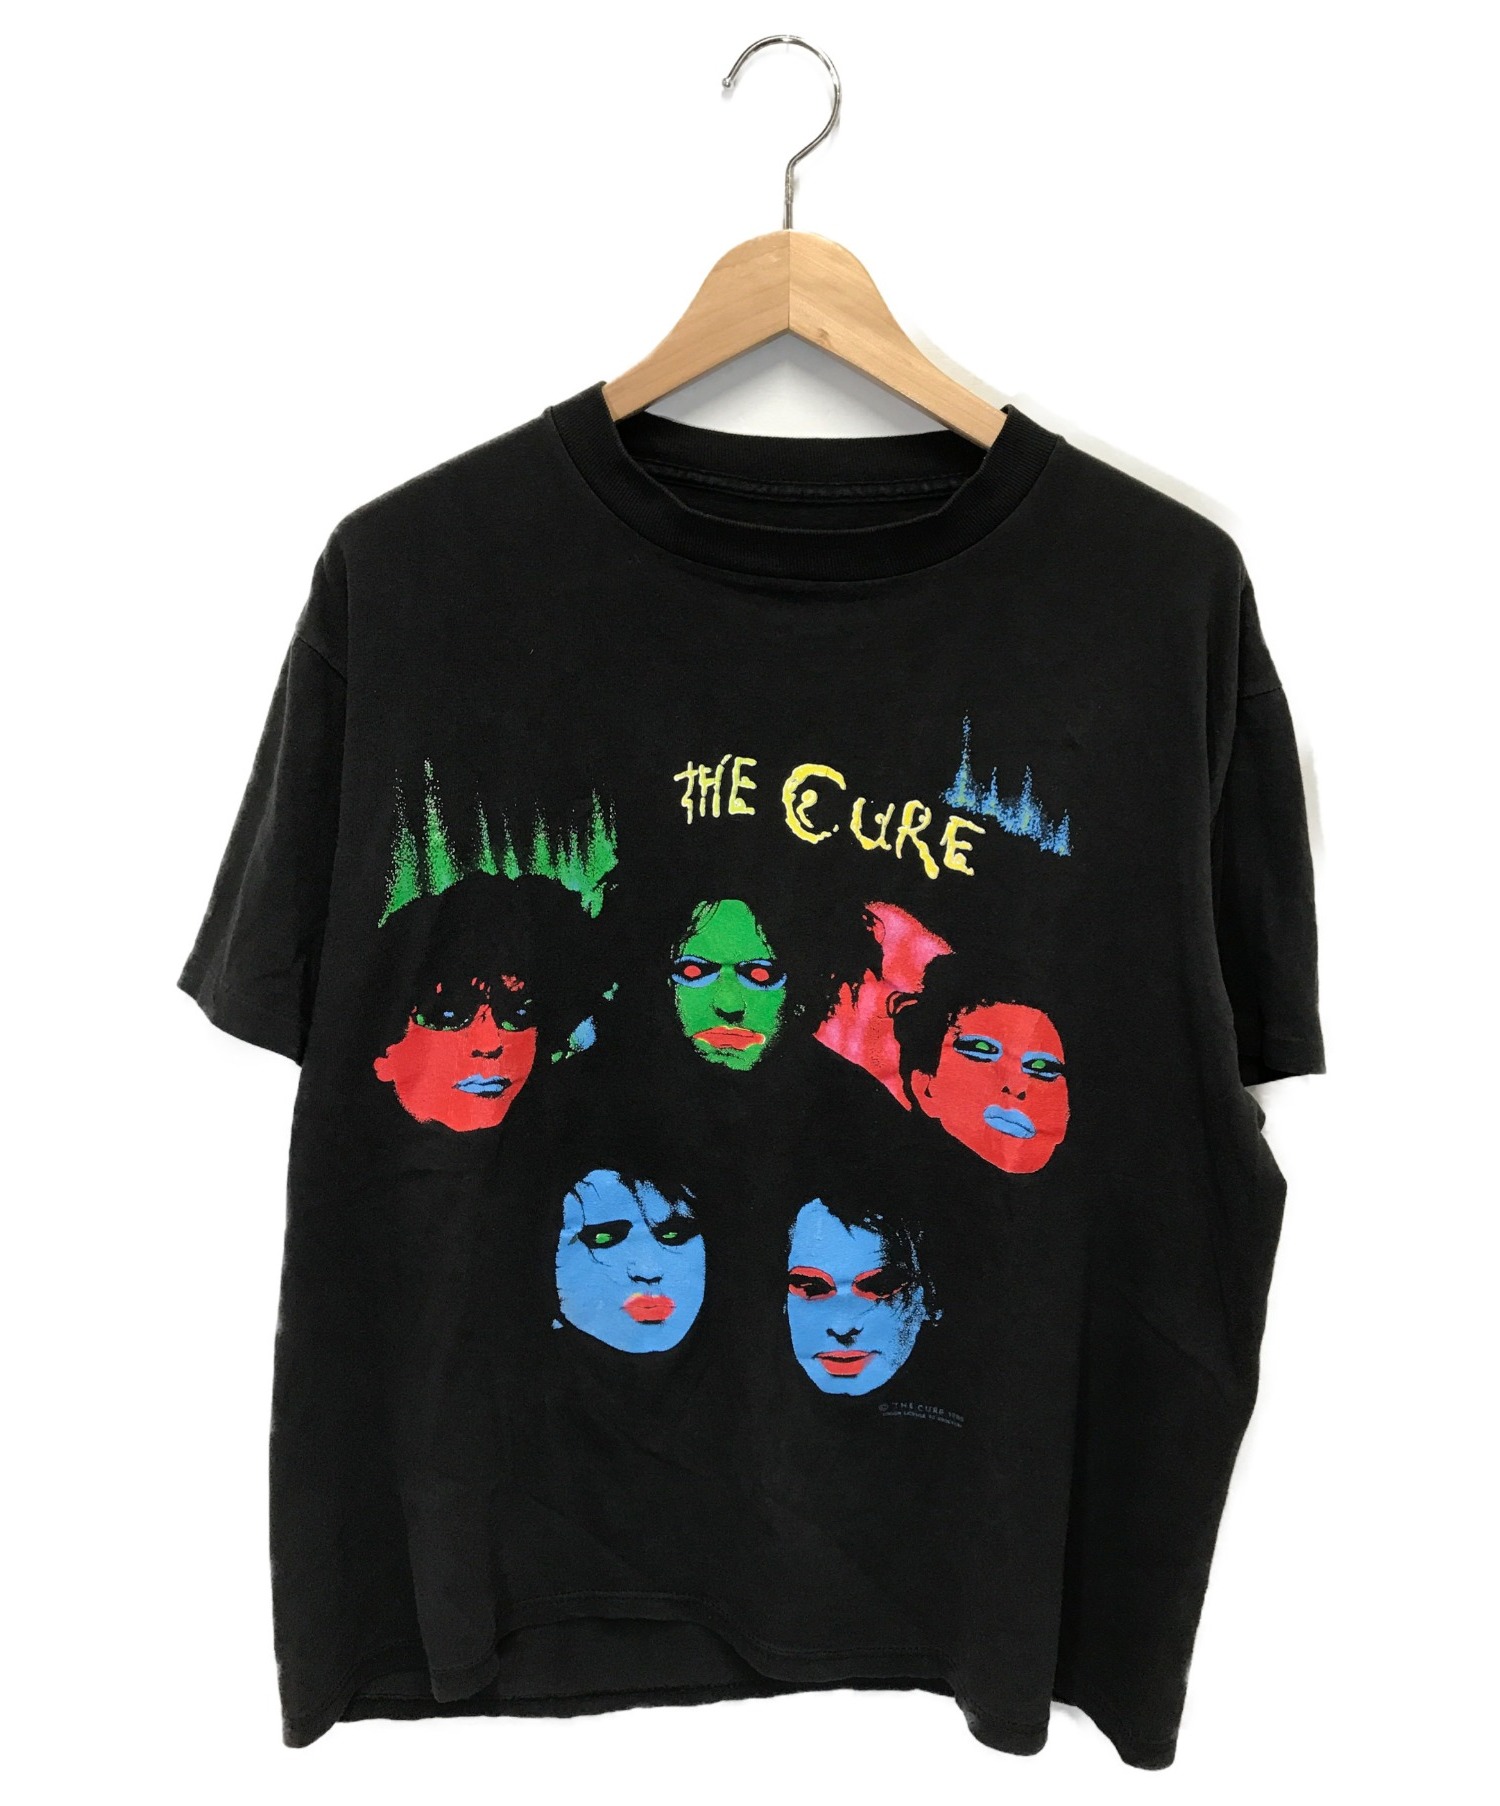 The Cure (ザ キュア) 80sヴィンテージバンドTシャツ ブラック サイズ:下記参照